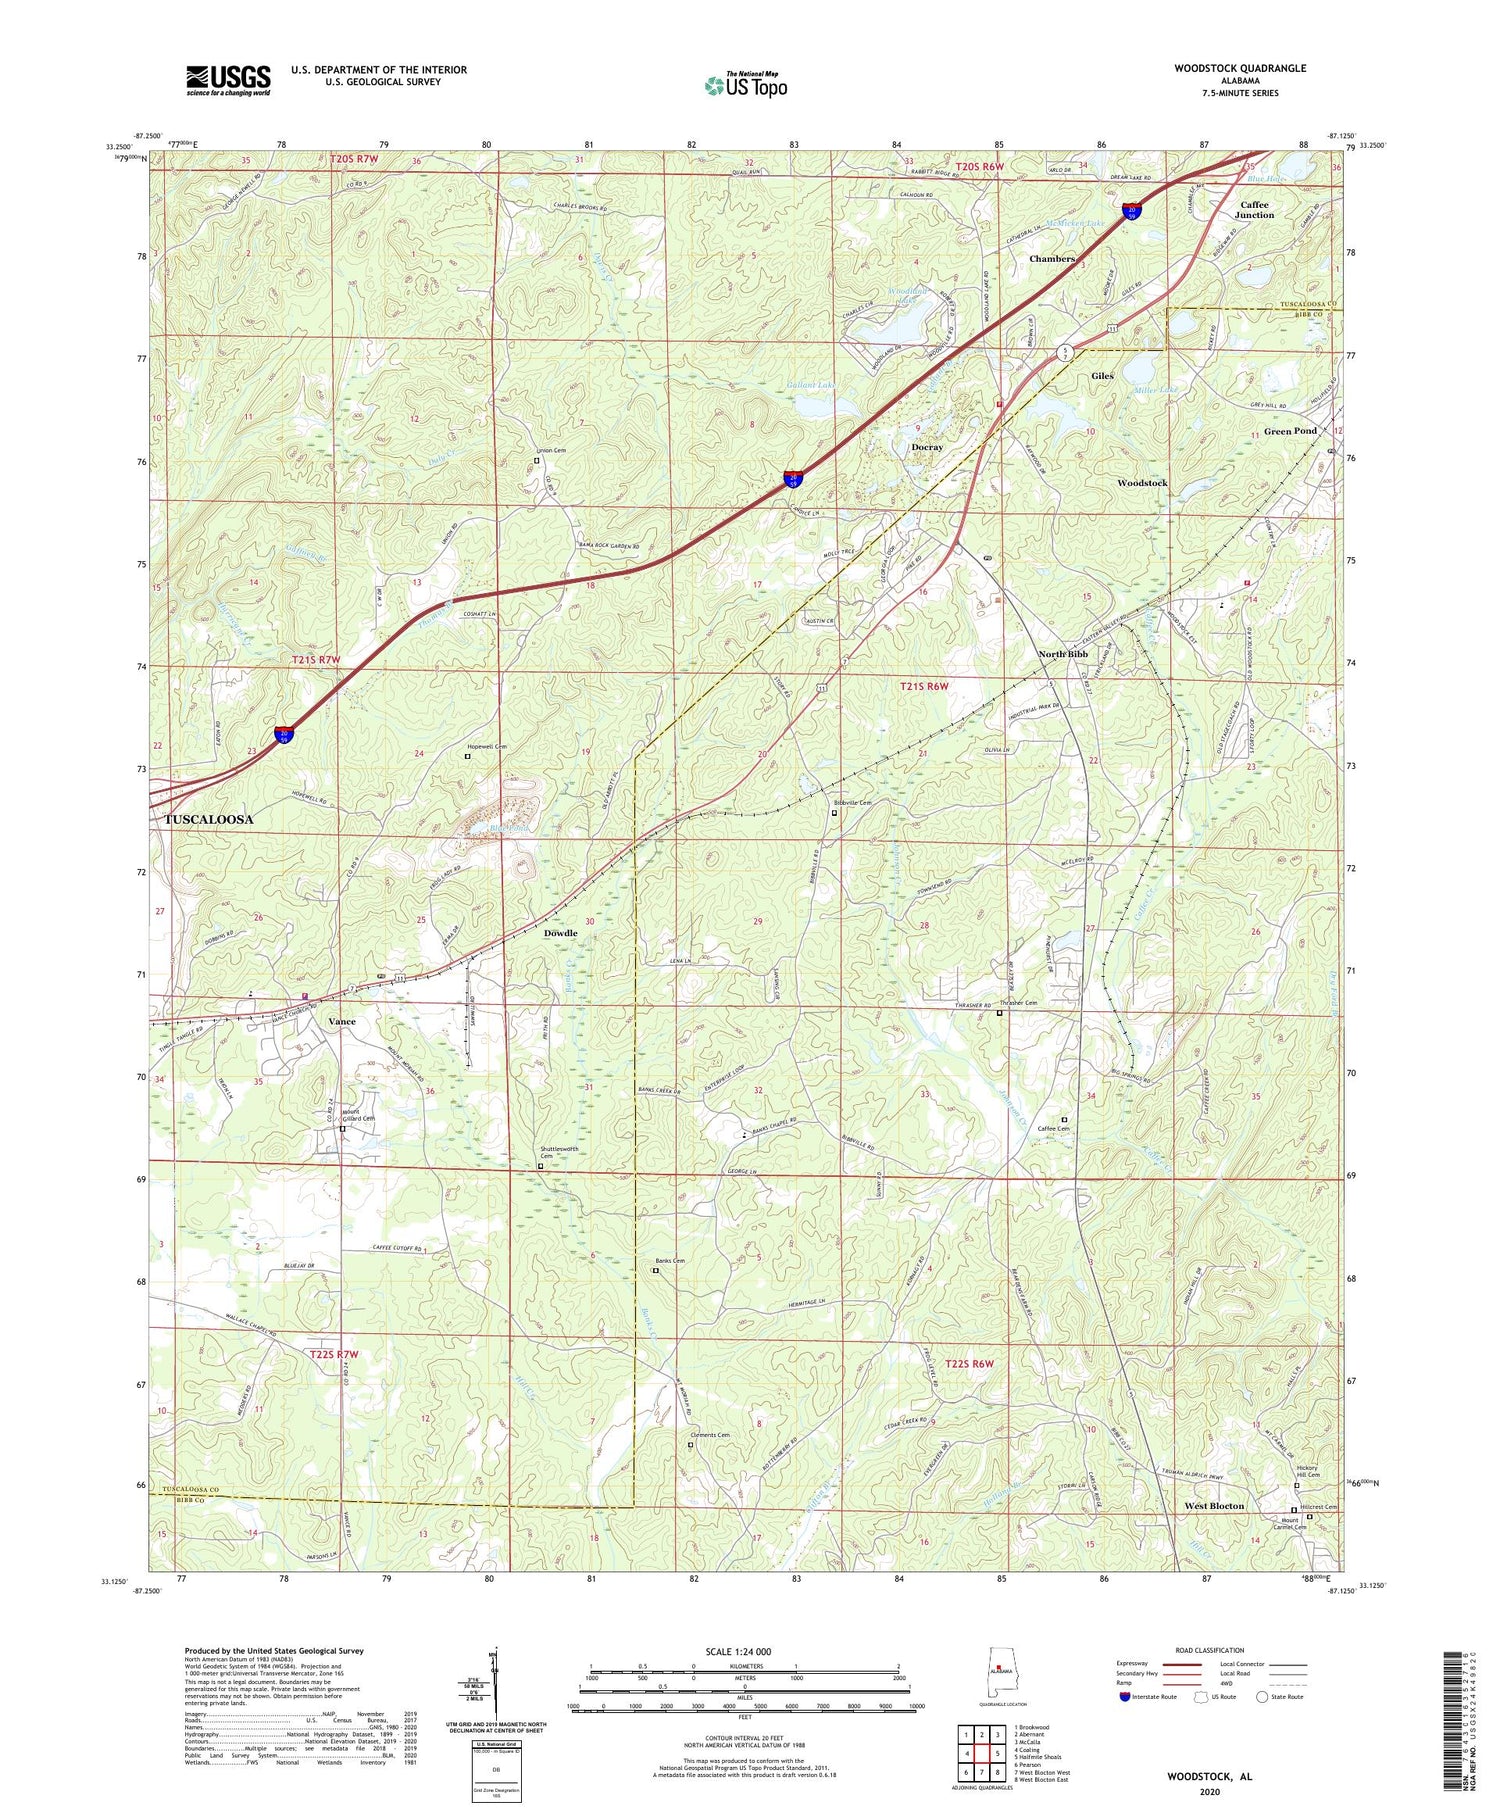 Woodstock Alabama US Topo Map Image